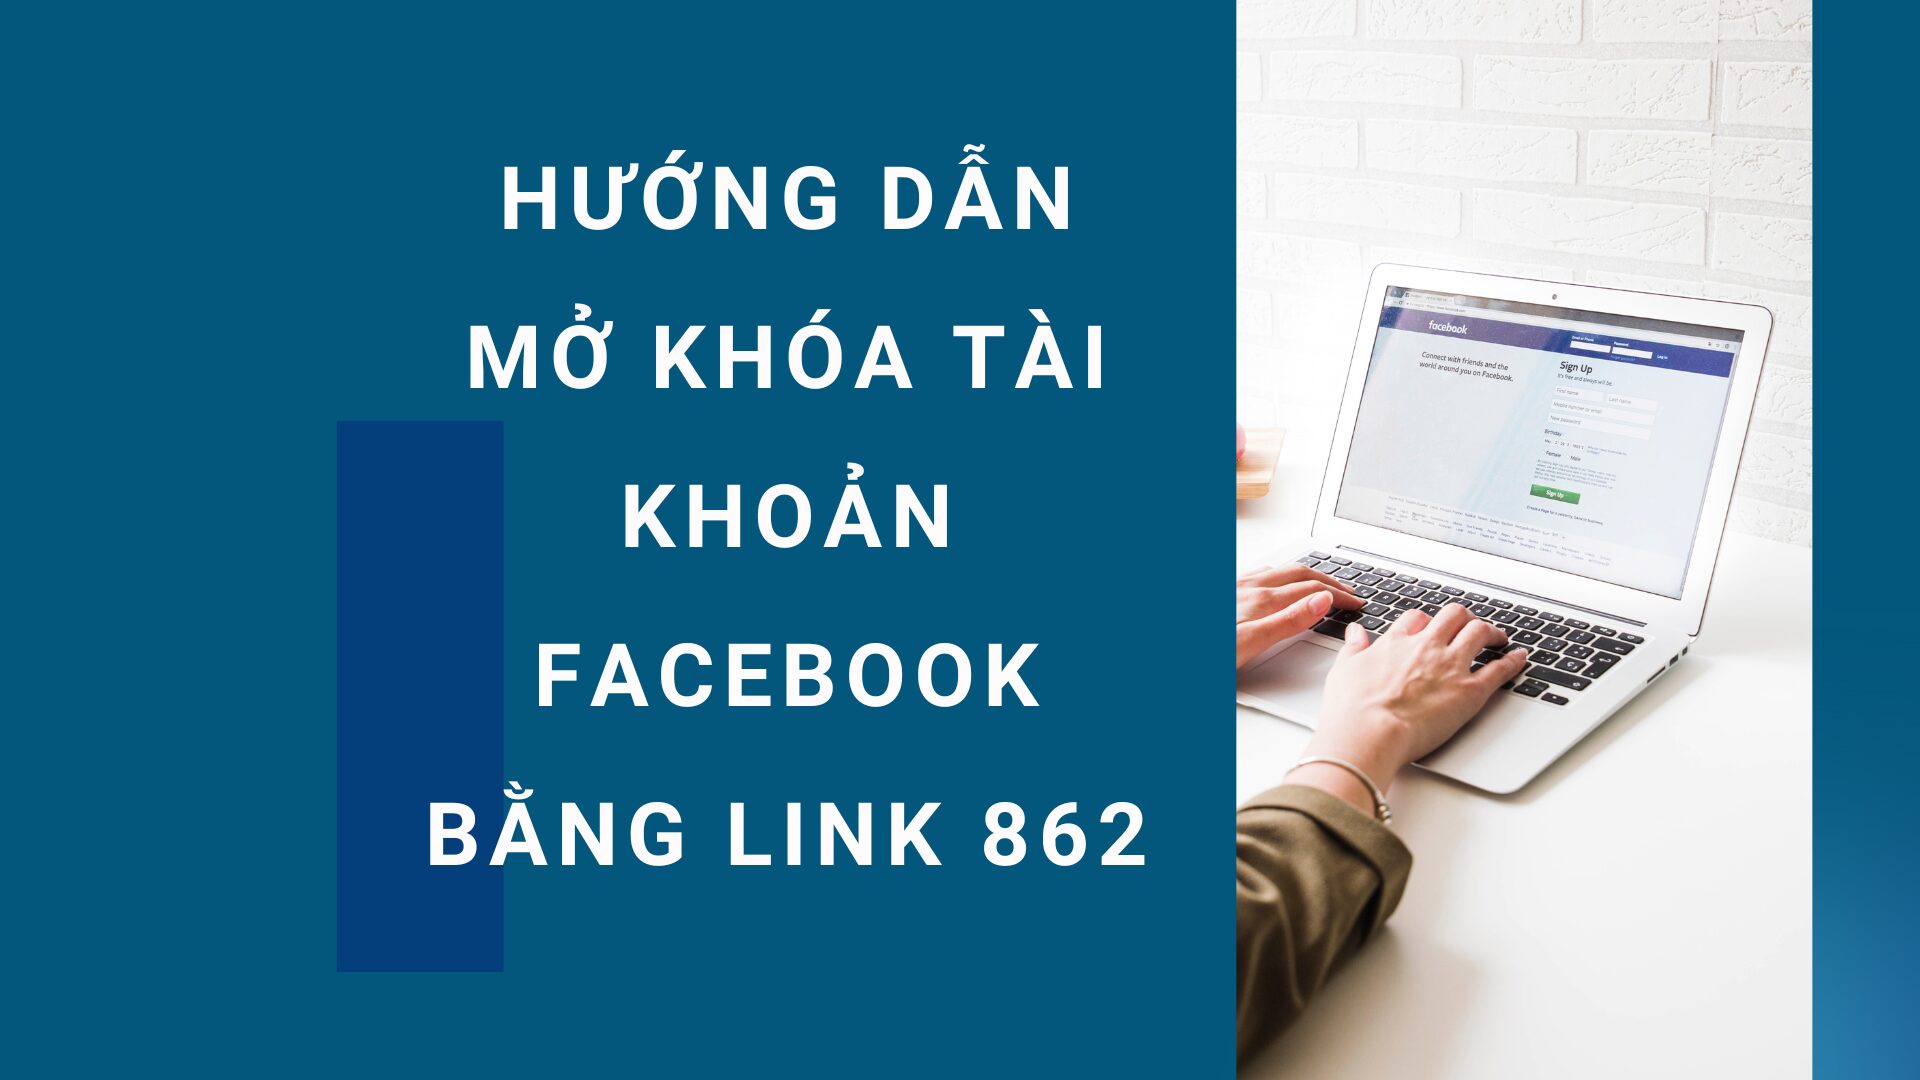 Hướng dẫn mở khóa tài khoản Facebook bằng link 862